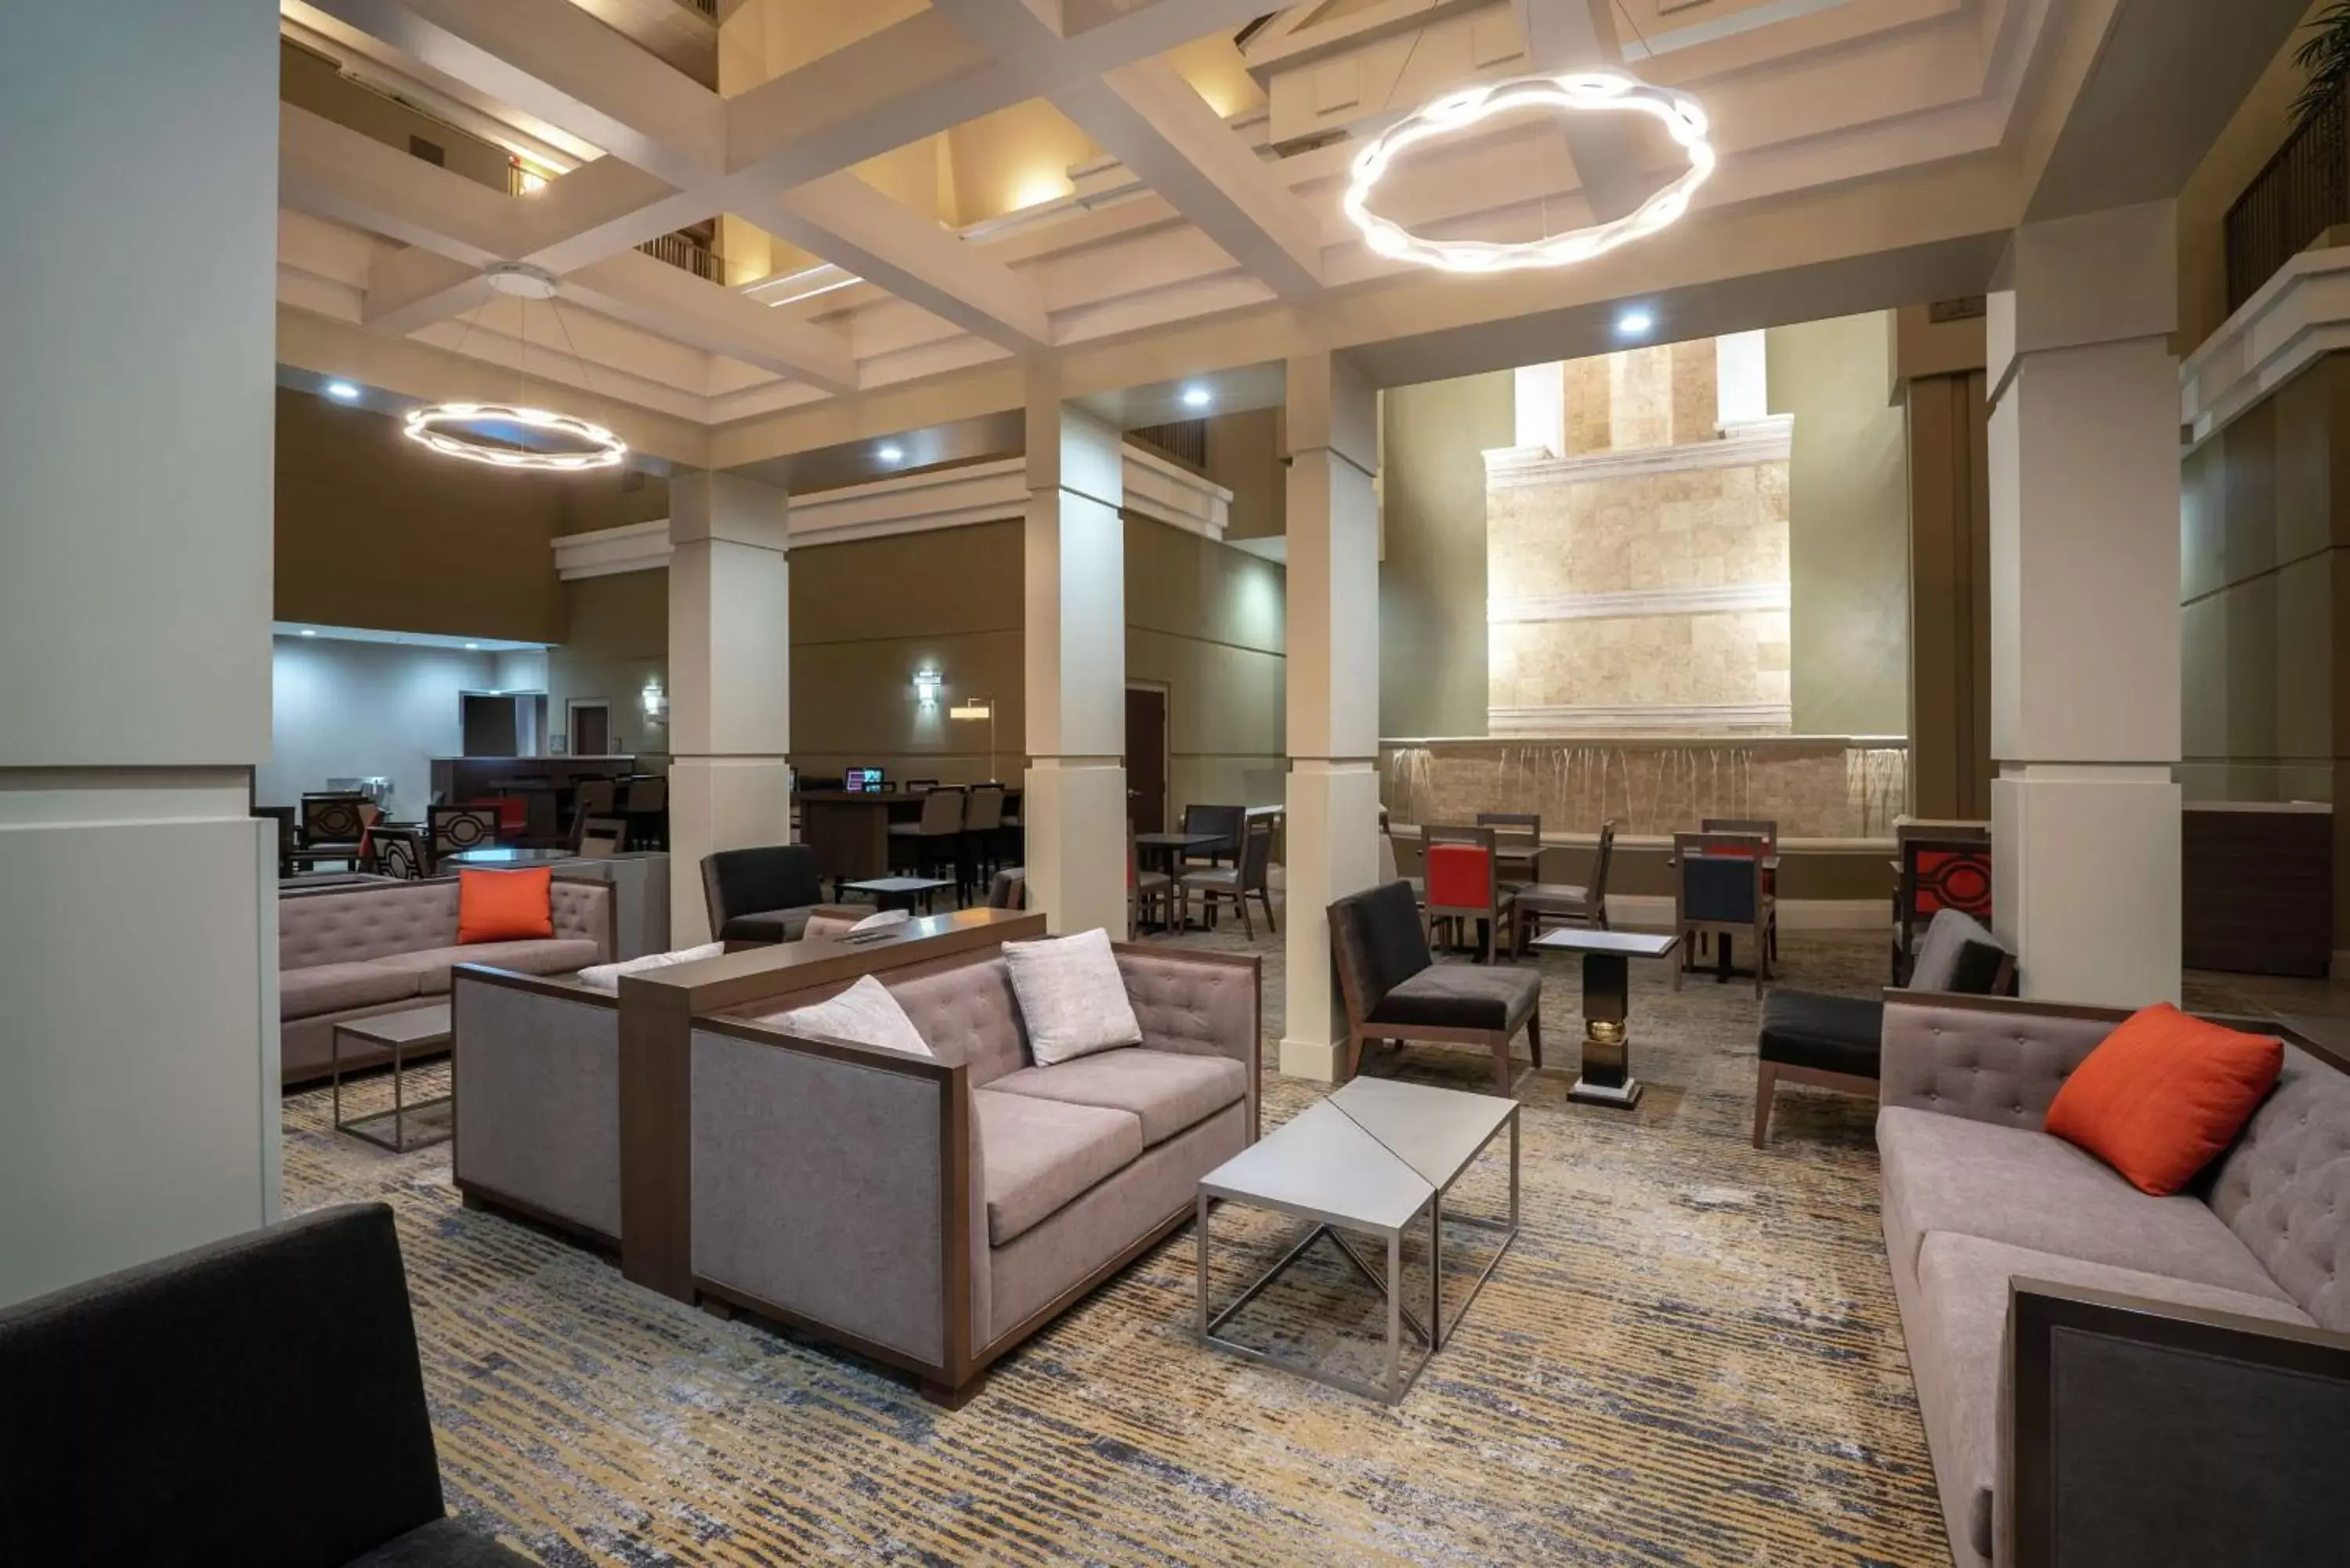 Lobby or reception, Lobby/Reception in Embassy Suites Nashville - at Vanderbilt